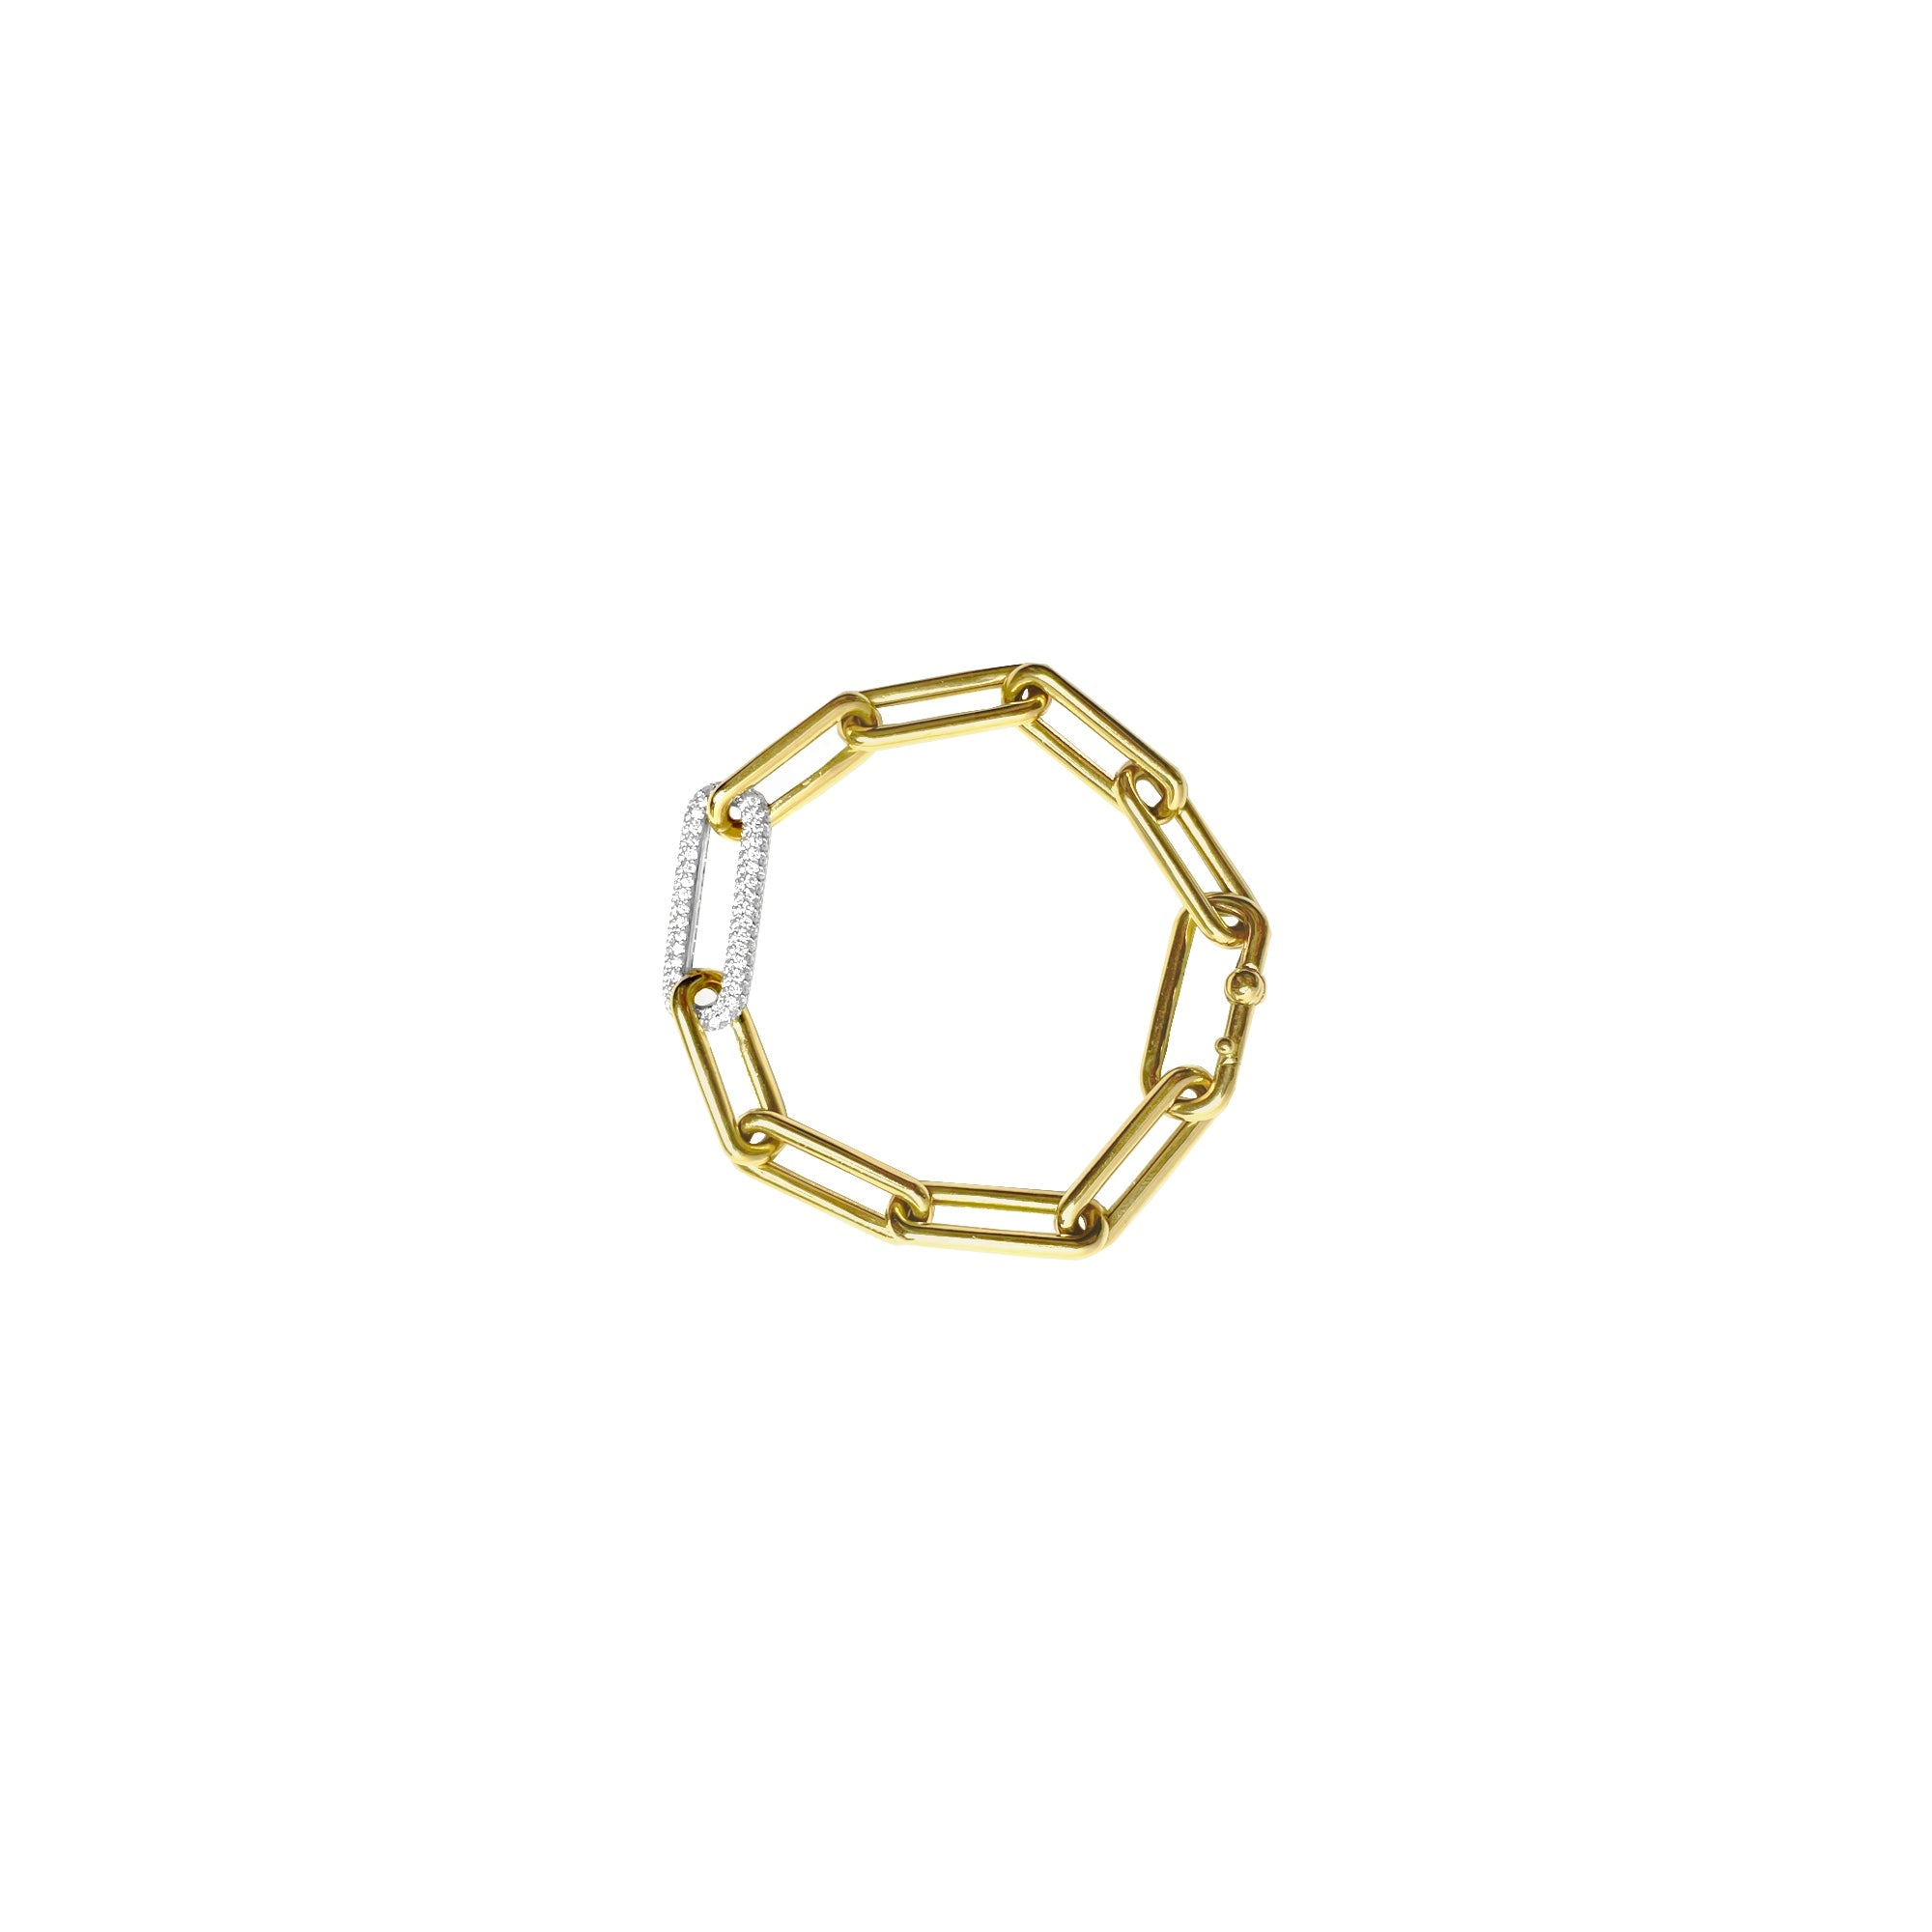 Foxy Chunky Diamond Chain Bracelet – STONE FINE JEWELRY